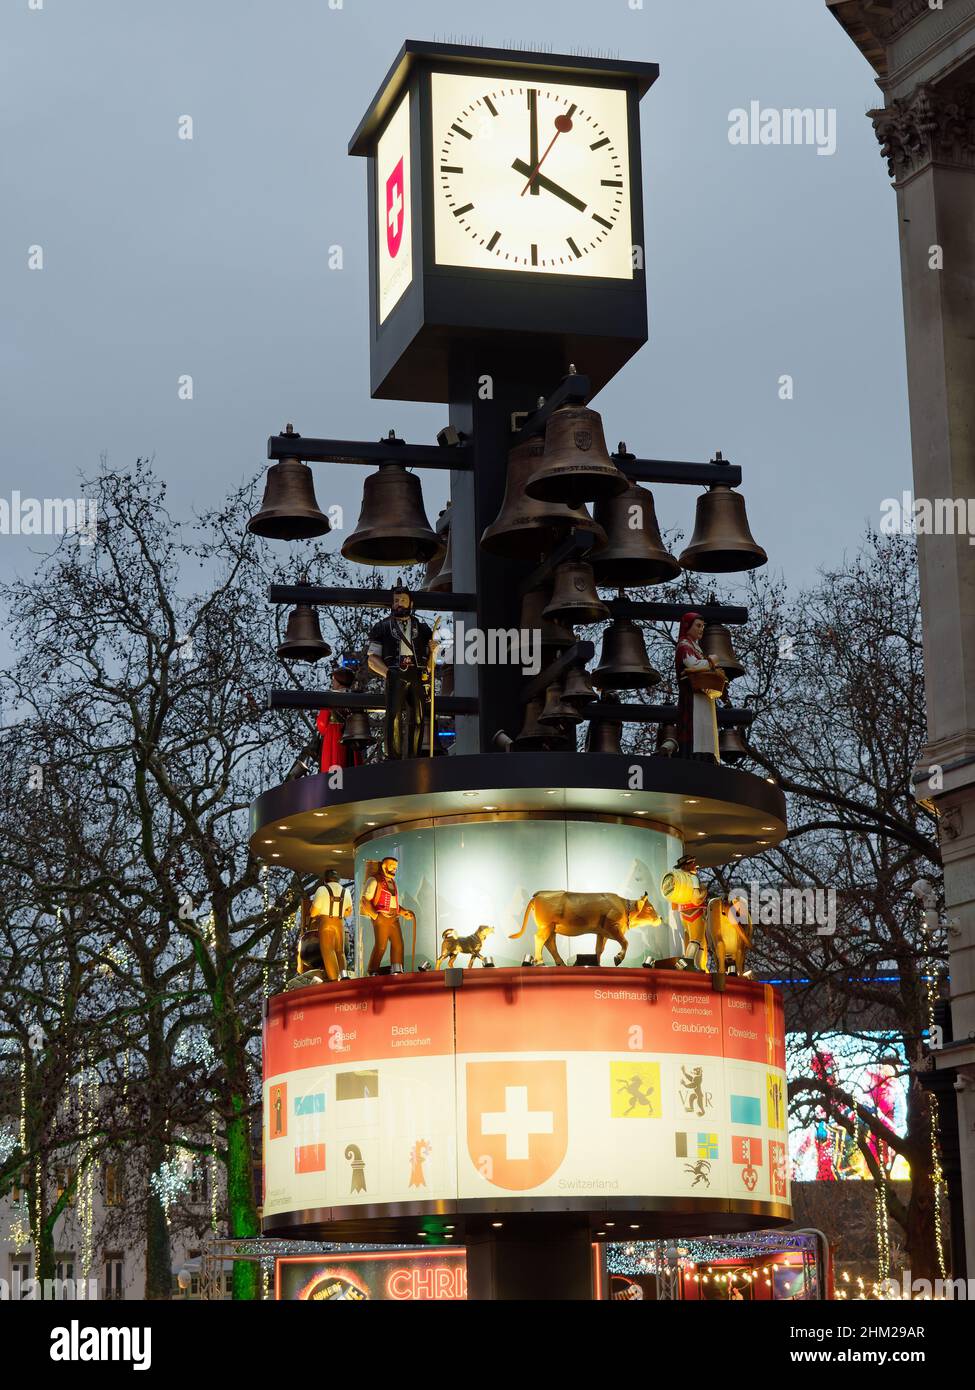 Vista del glockenspiel suizo también conocido como el reloj suizo en Leicester Square London al atardecer Foto de stock